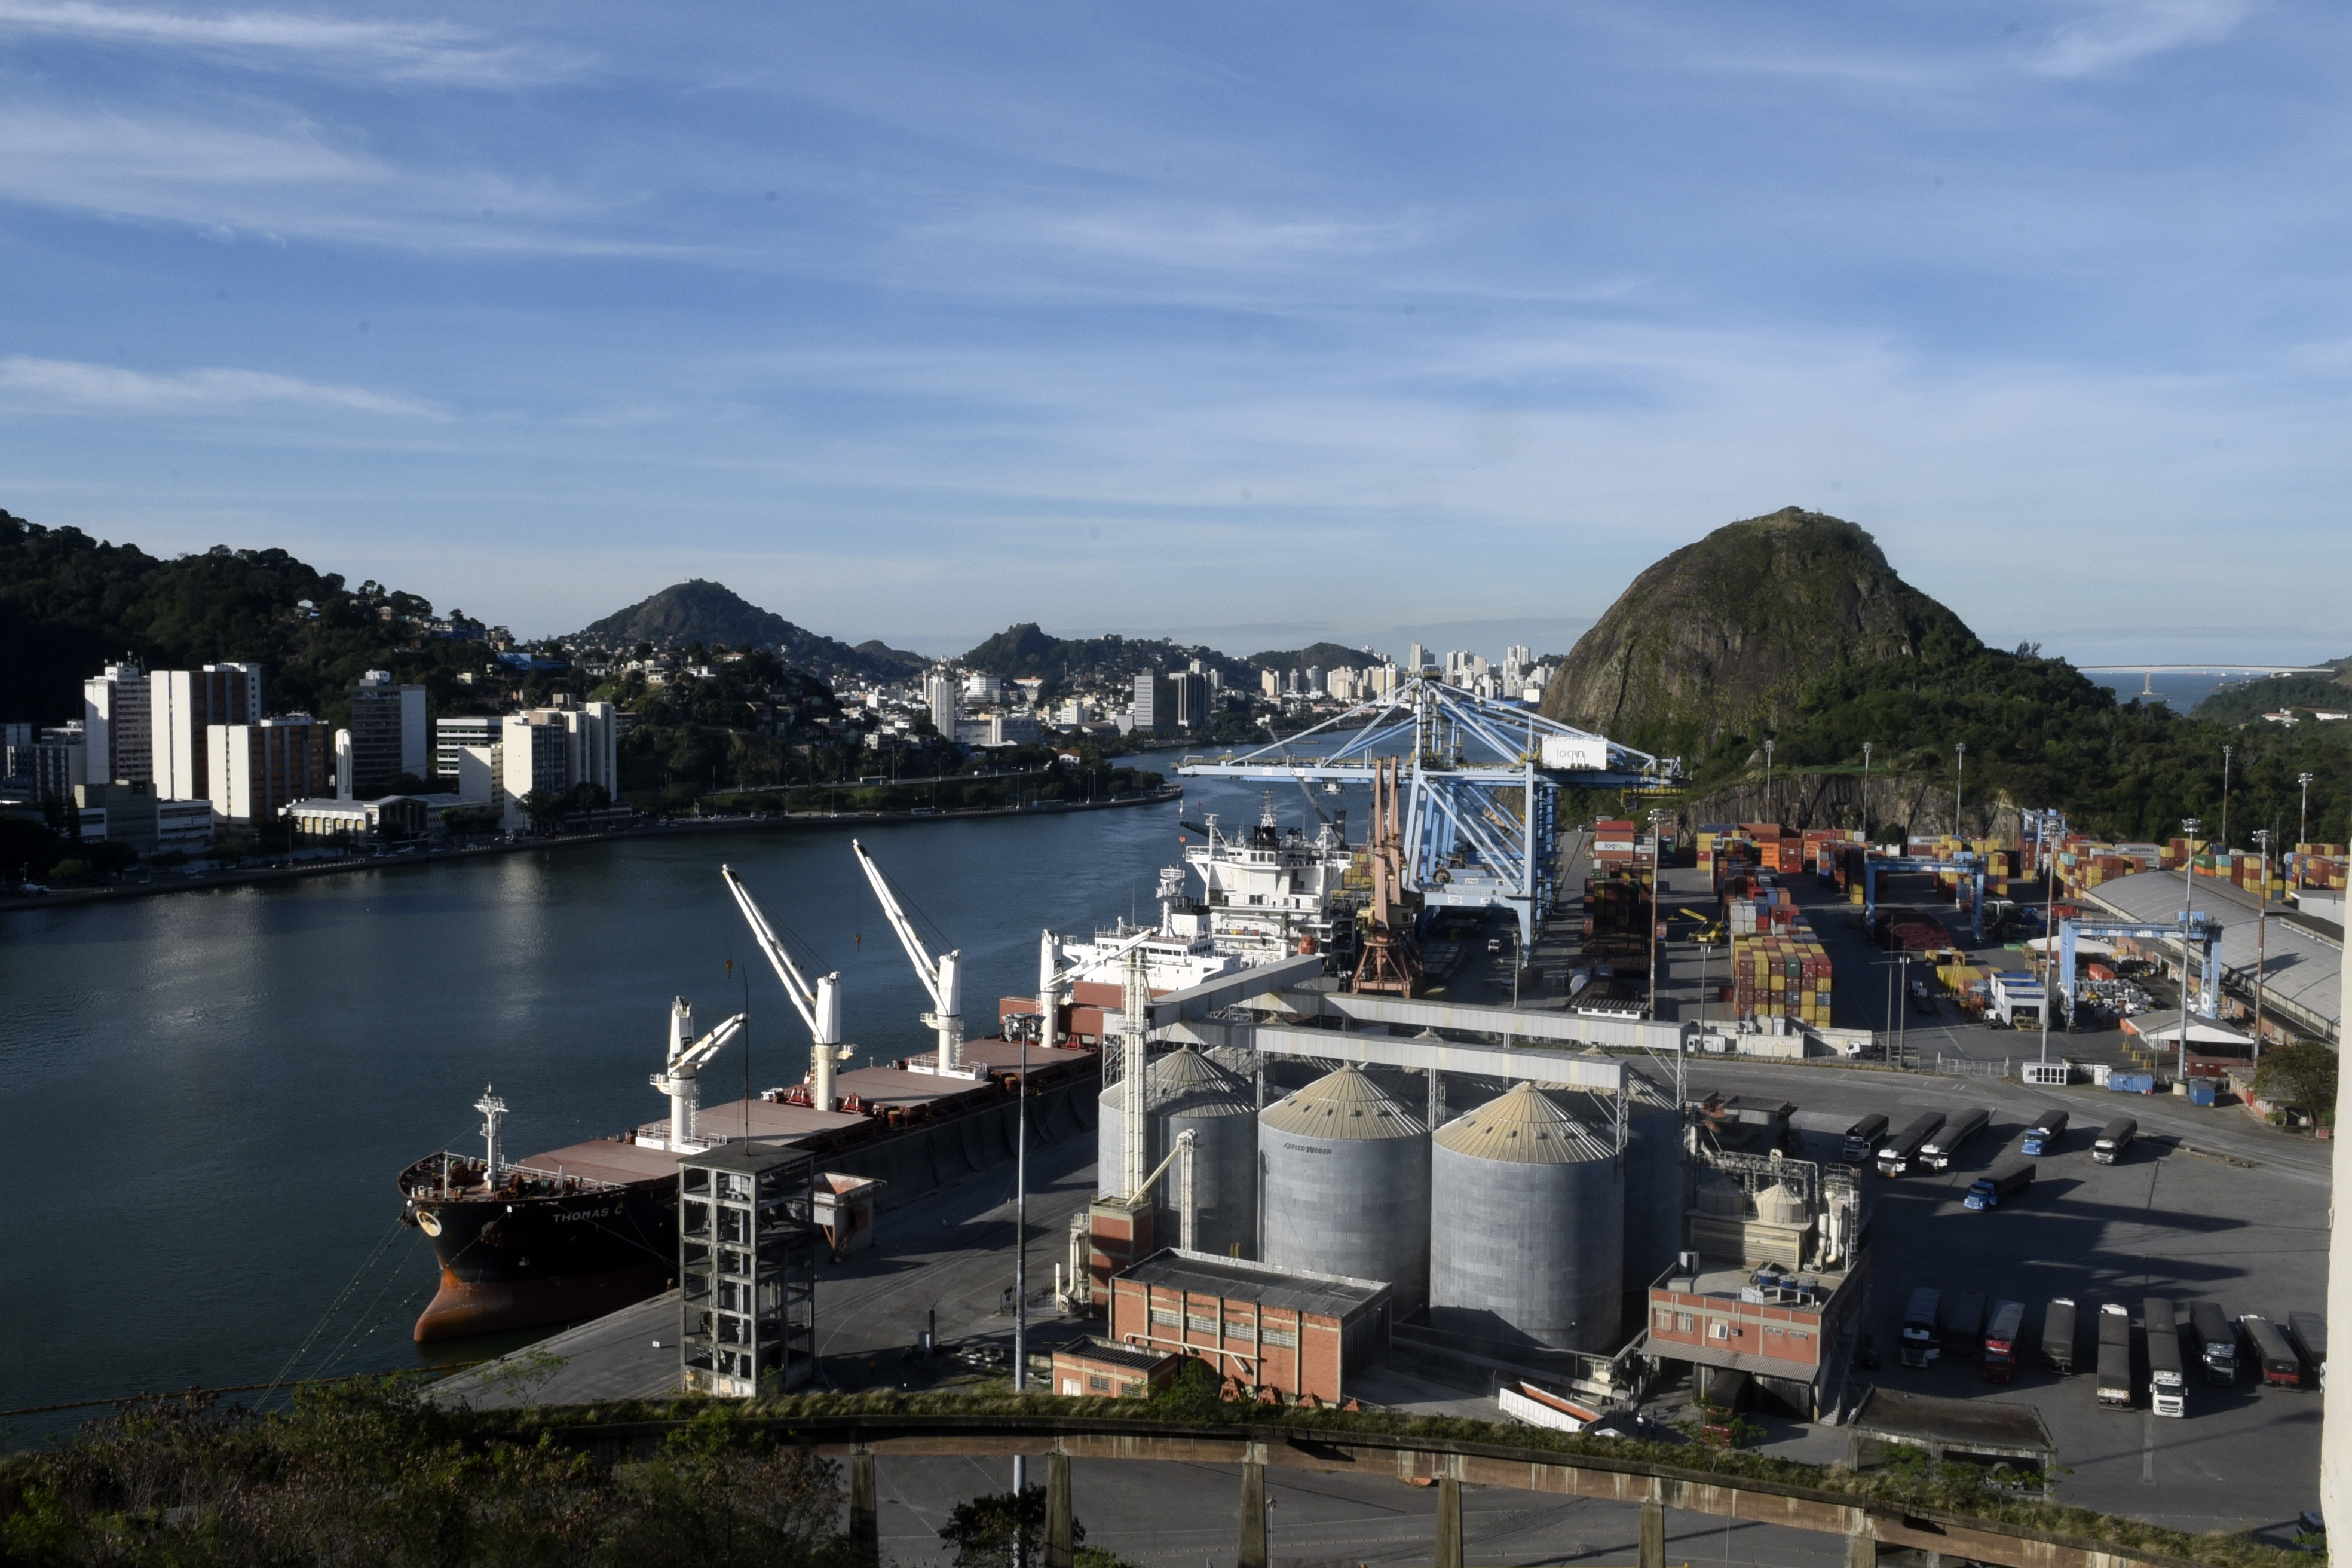 O Terminal Portuário de Vila Velha (TVV), único terminal de contêineres do Estado, é administrado pela empresa Log-in Logística.  Por lá passam eletrodomésticos, insumos para a indústria de mineração e siderúrgica, e outros.